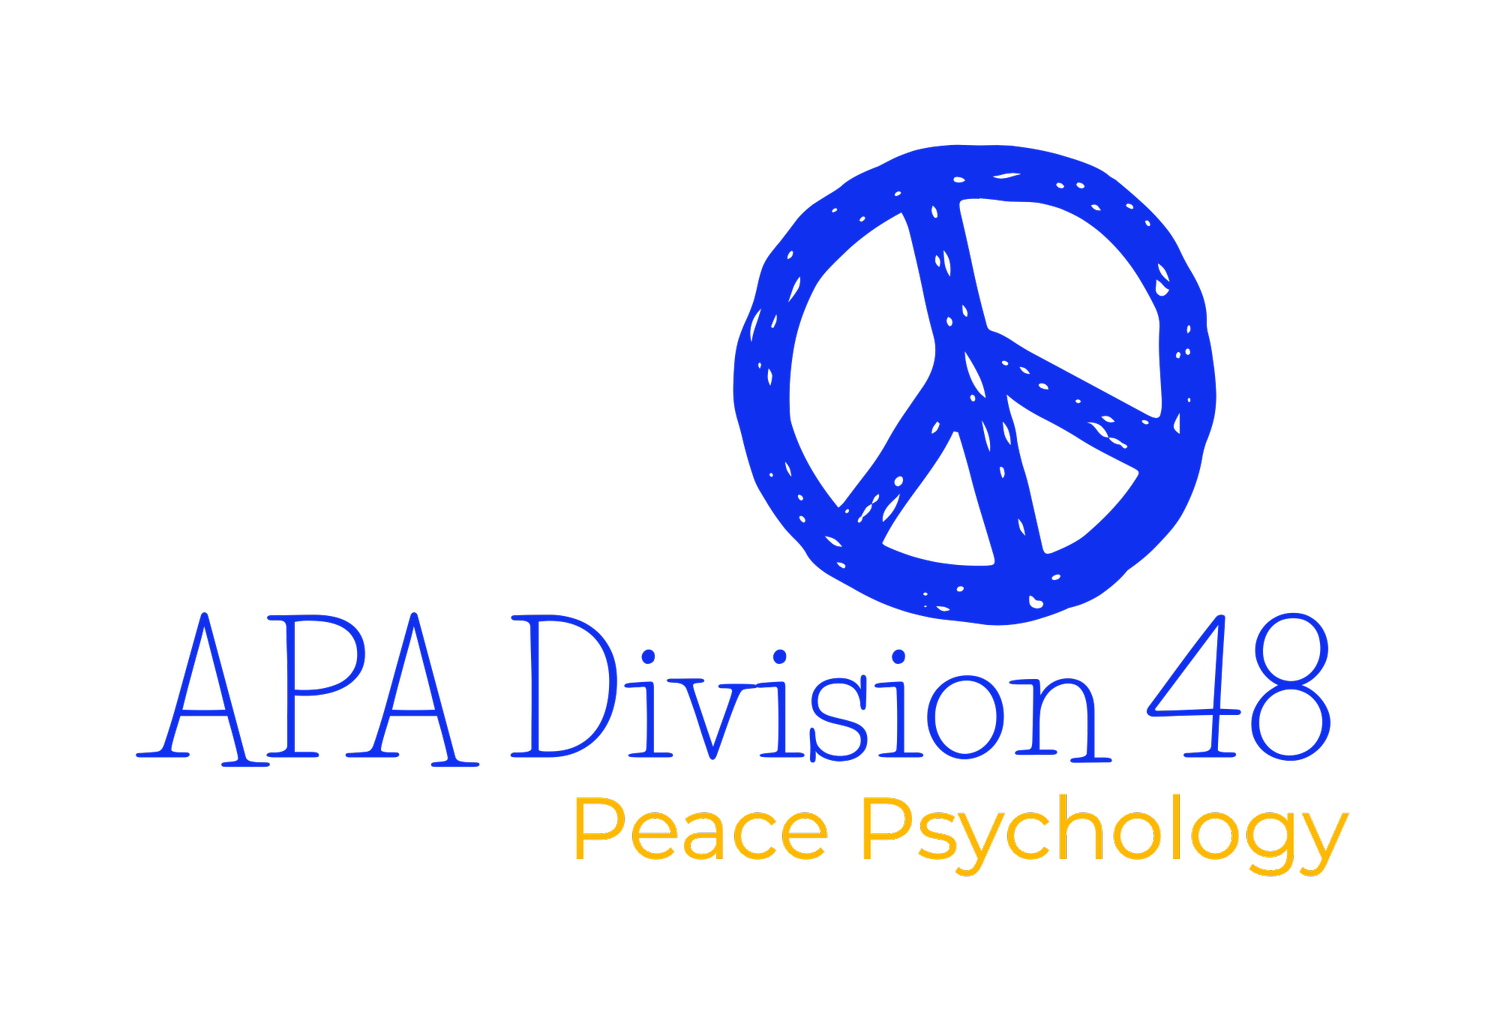 APA Division 48